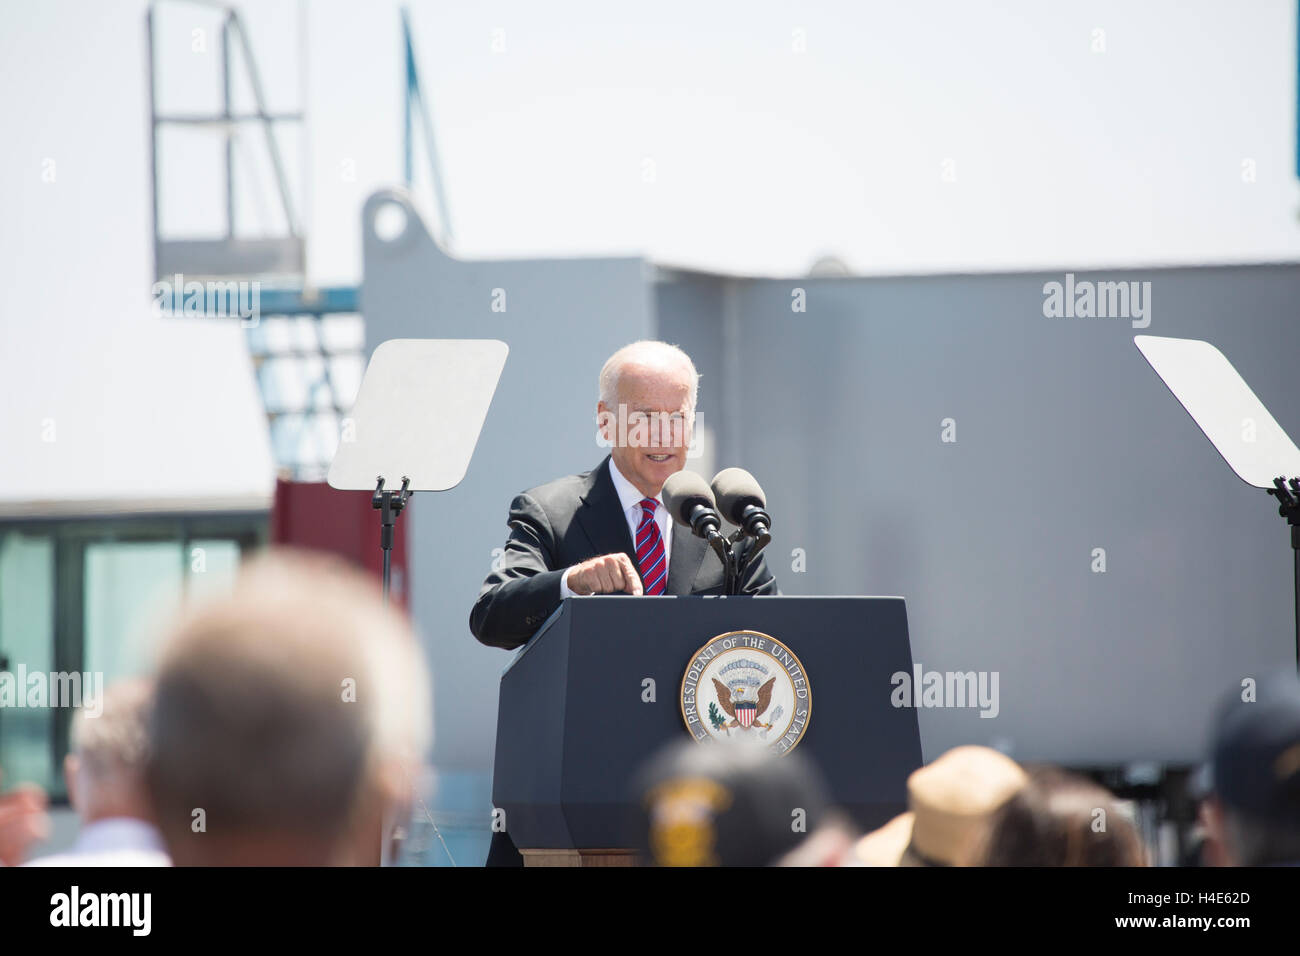 Vize-Präsident Joe Biden spricht über die Durchsetzung der Handel im Hafen von San Digeo, CA Unfided Stockfoto